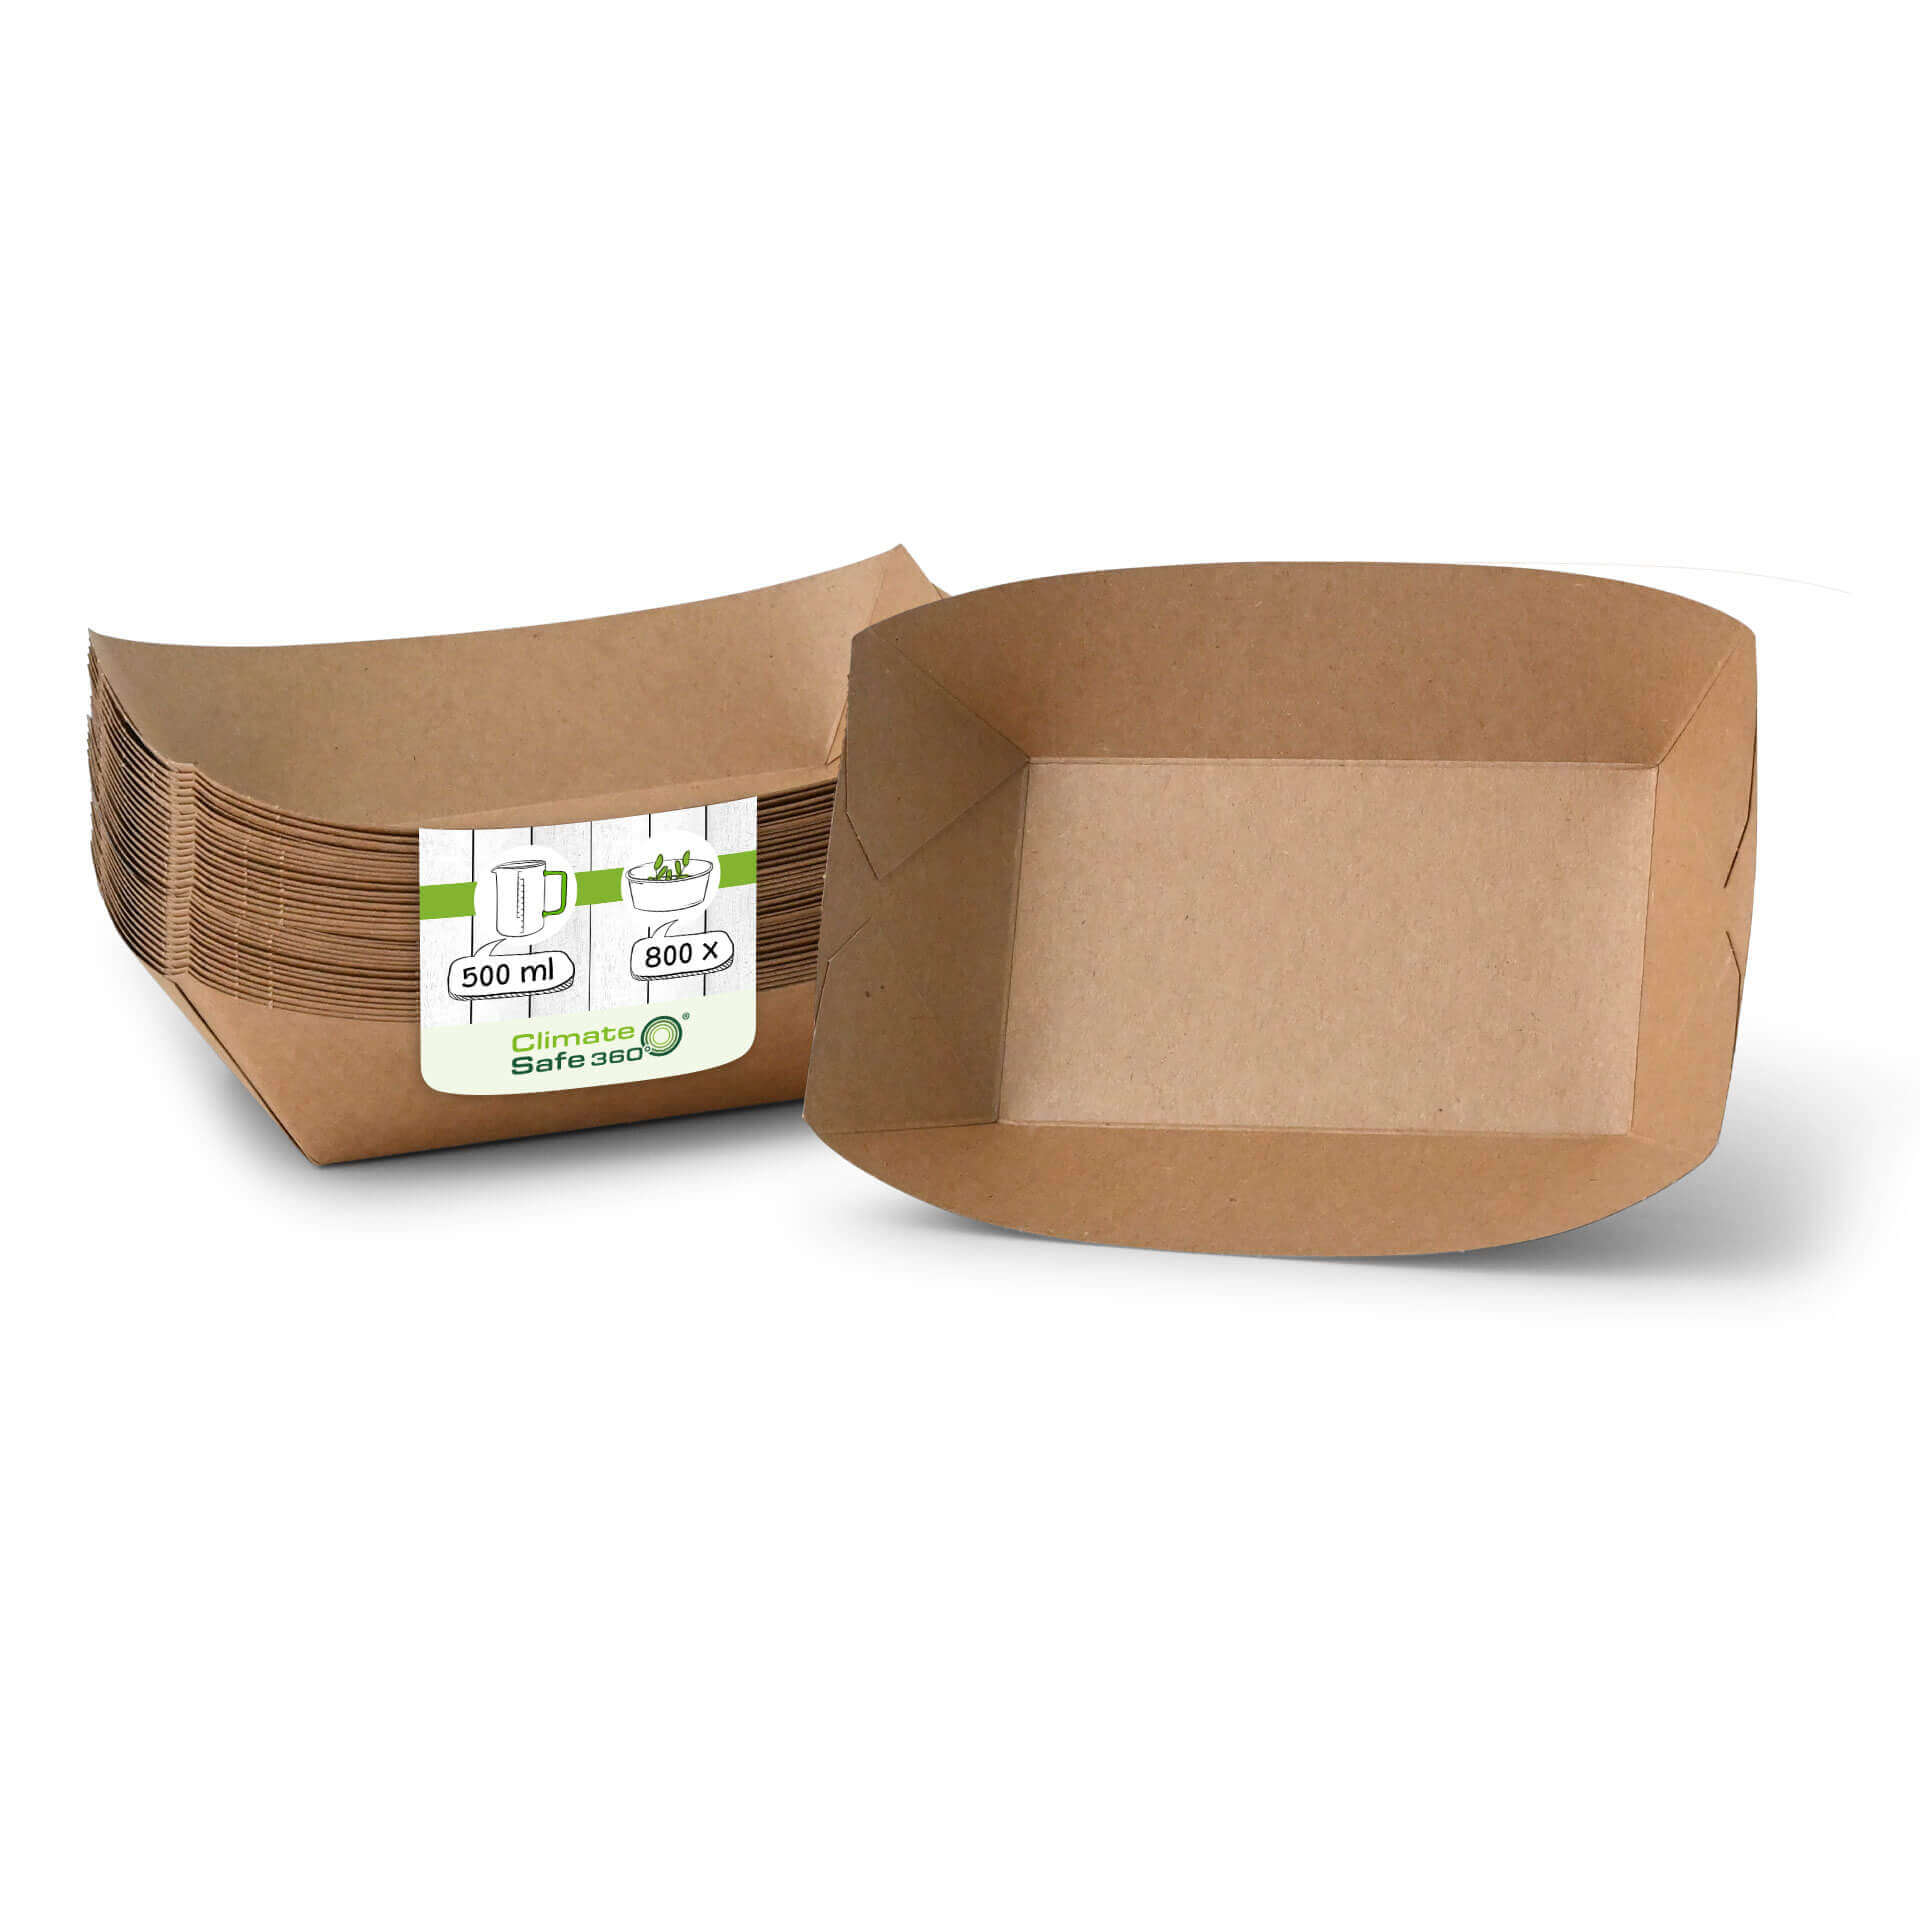 Snackschalen aus Karton (Premium) 500 ml, braun, bio-beschichtet